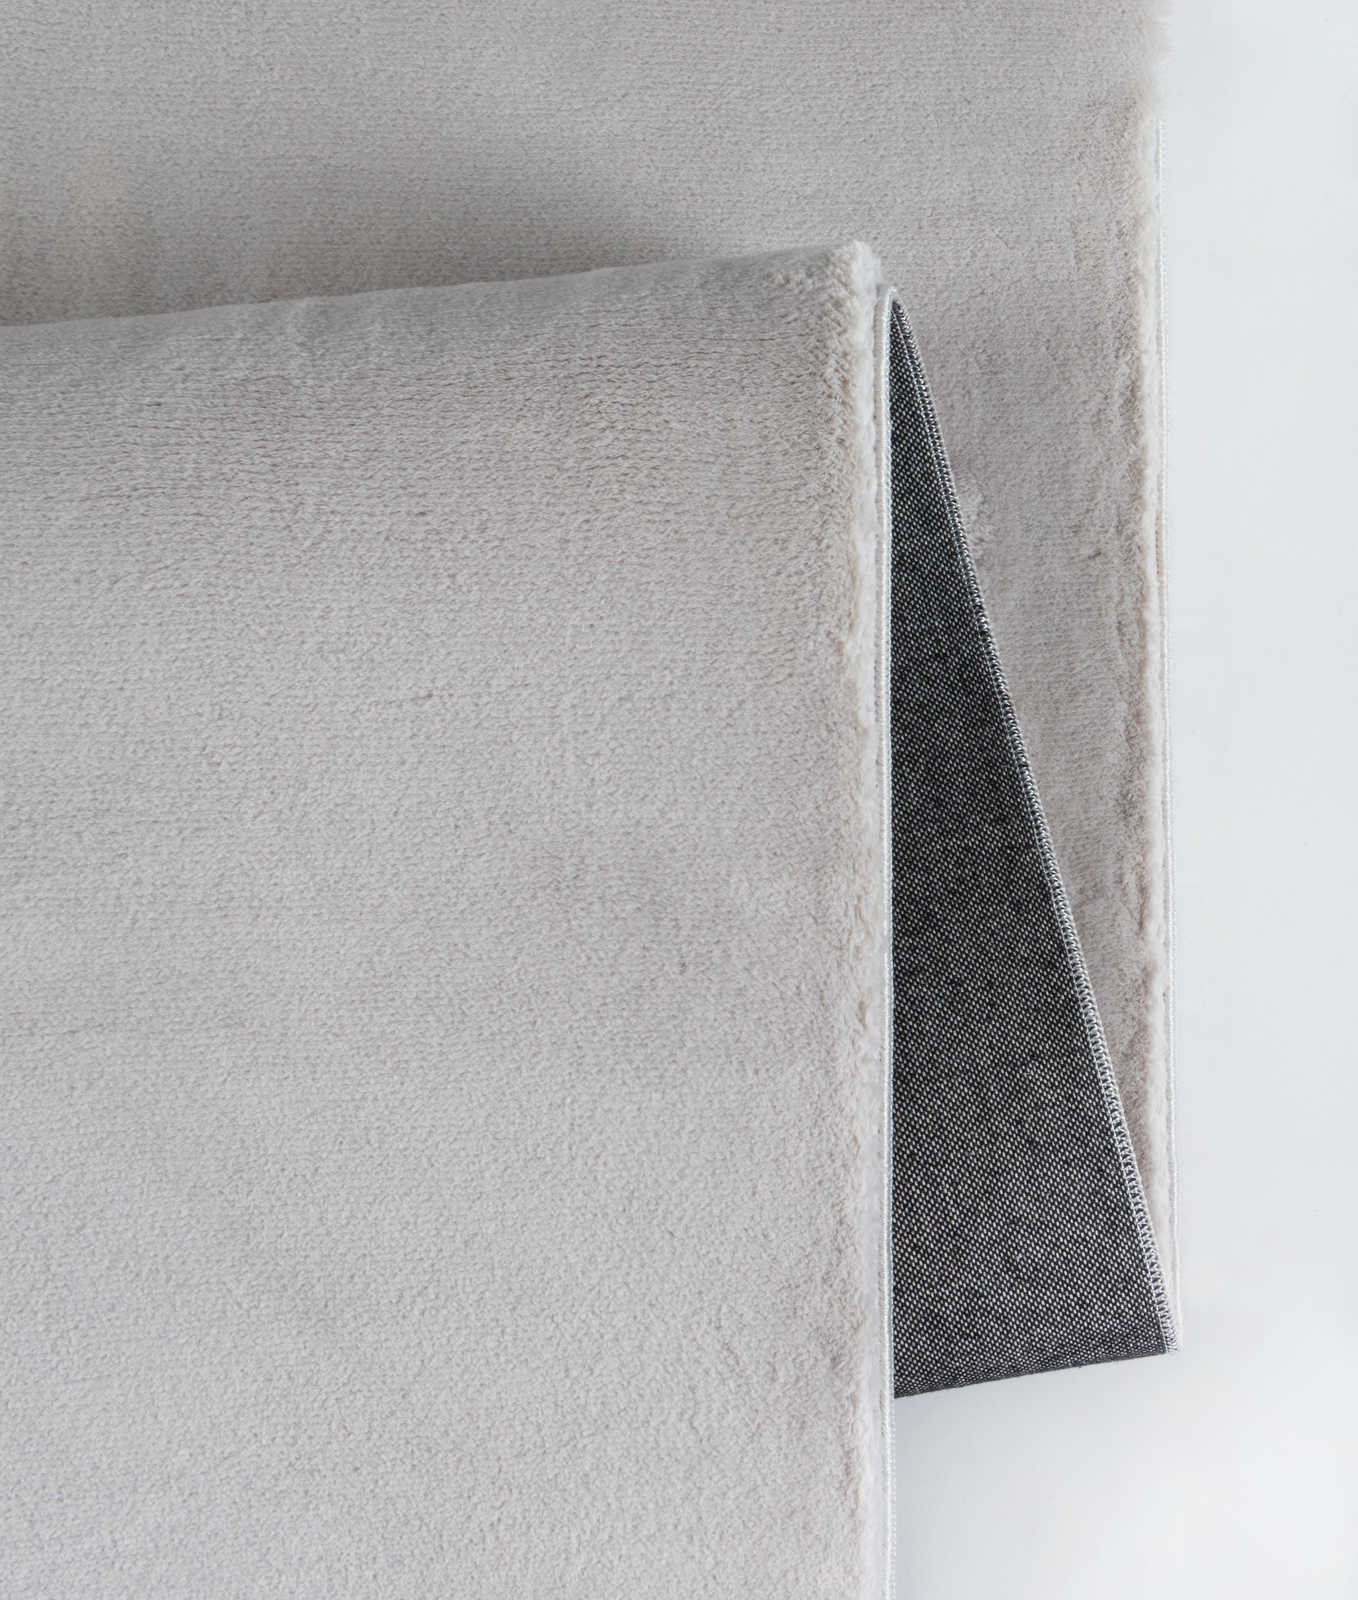             Kuscheliger Hochflor Teppich in sanften Grau – 110 x 60 cm
        